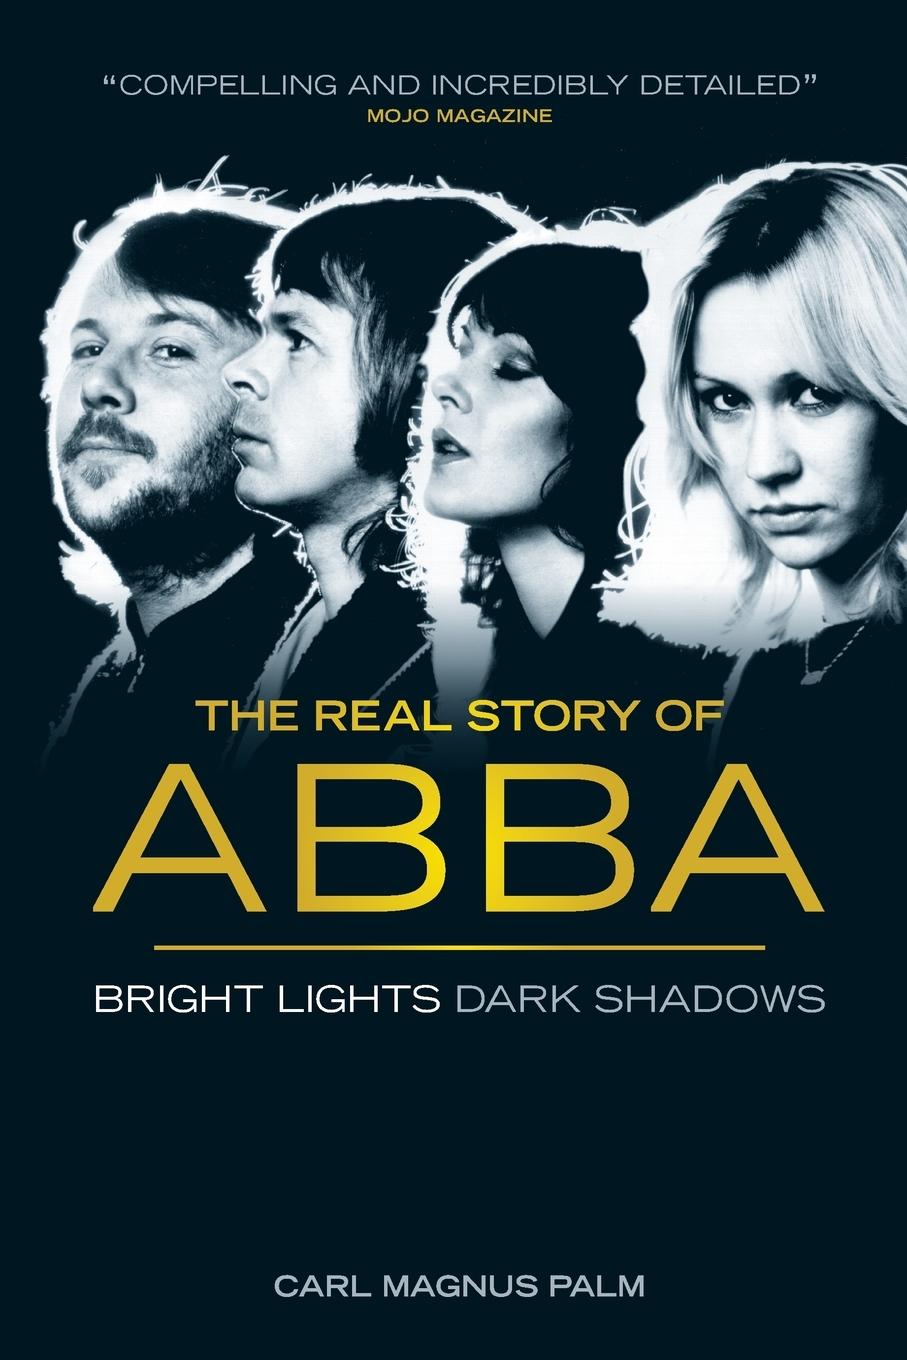 Bright Lights Dark Shadows / The Real Story of ABBA / Carl Magnus Palm / Taschenbuch / Paperback / Kartoniert / Broschiert / Englisch / 2014 / Omnibus Press / EAN 9781783053599 - Palm, Carl Magnus